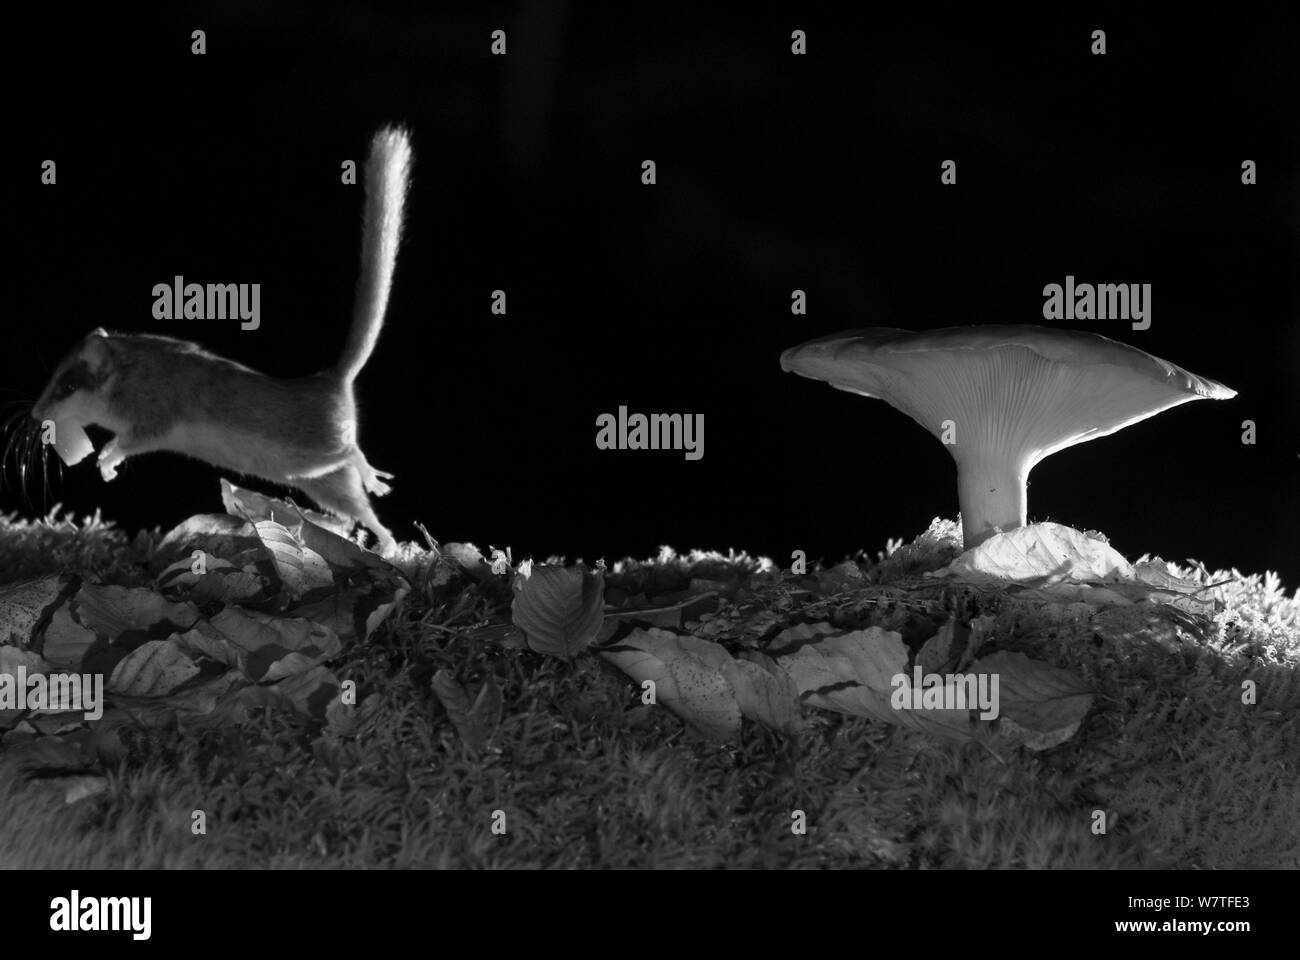 Wald Siebenschläfer (Dryomys nitedula) Durchführung Köder (pear) neben Pilz, in der Nacht, mit Infrarot Fernbedienung Kamera trap, Slowenien, Oktober getroffen. Stockfoto